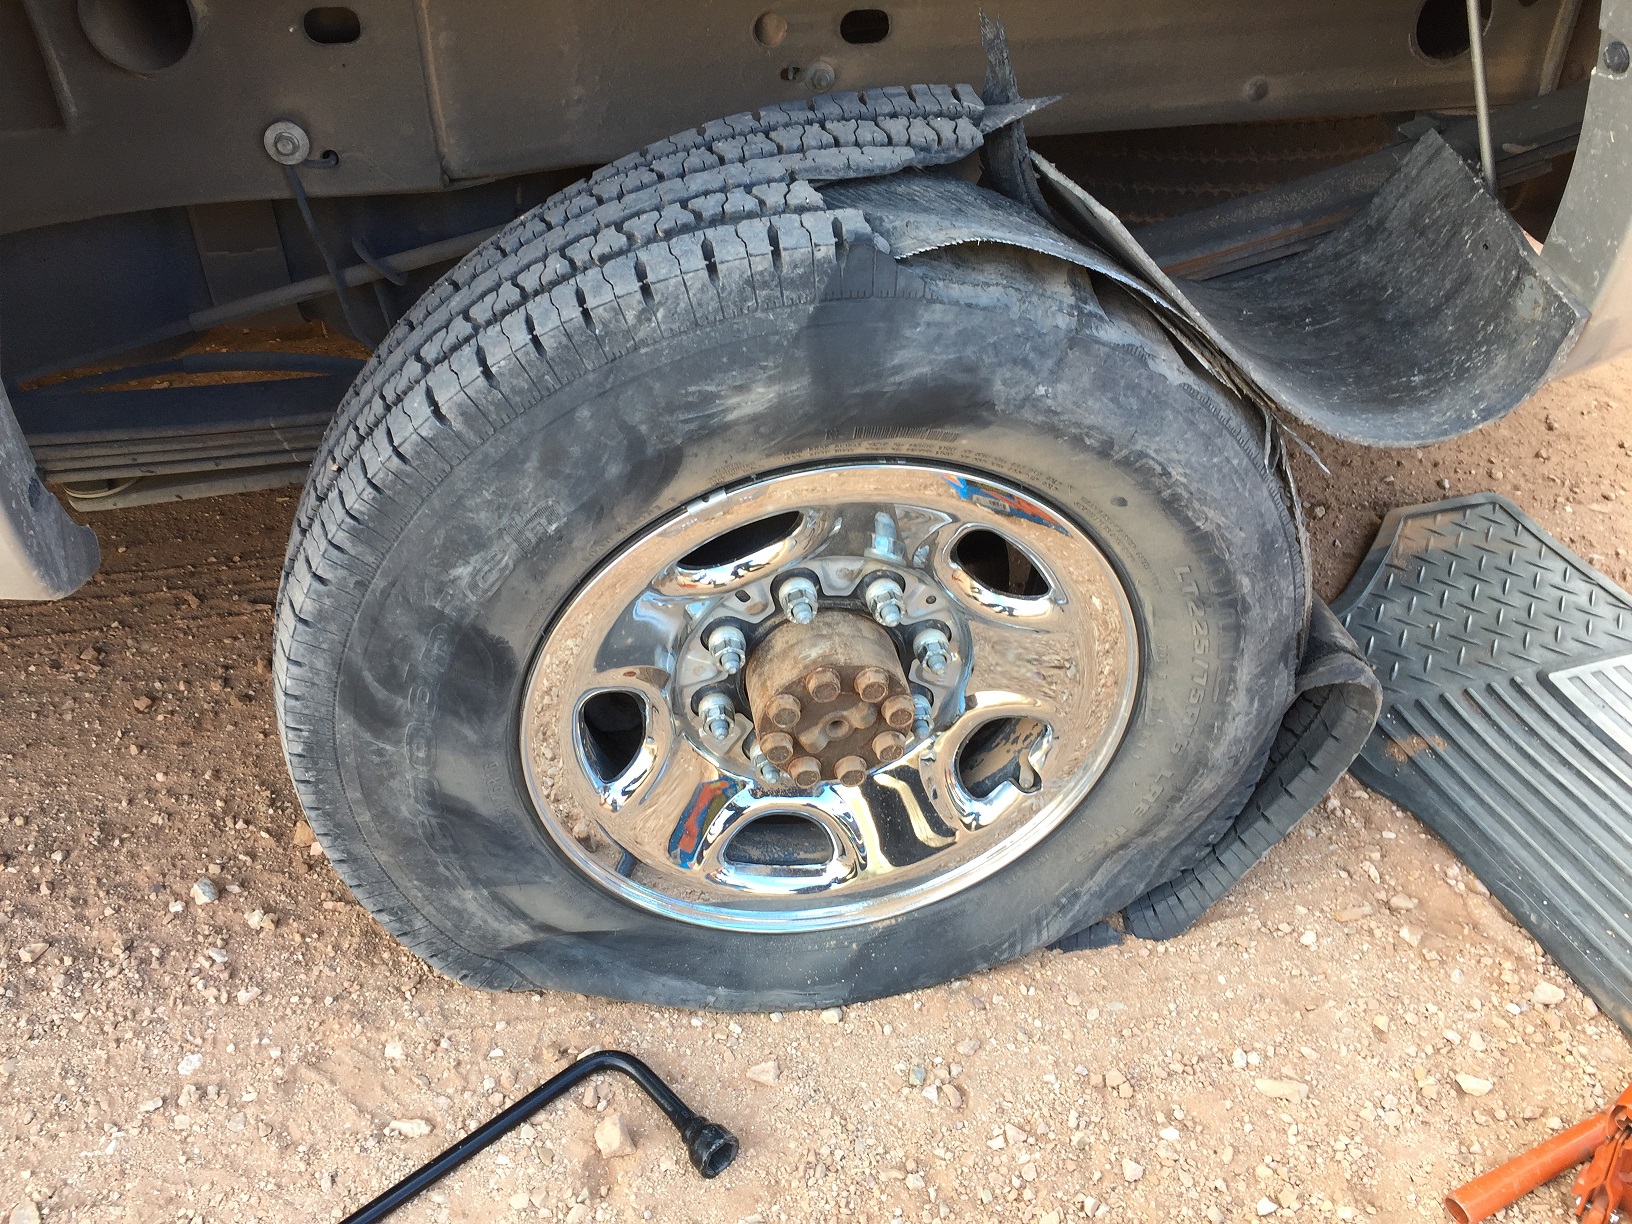 A flat tire - definitely a problem